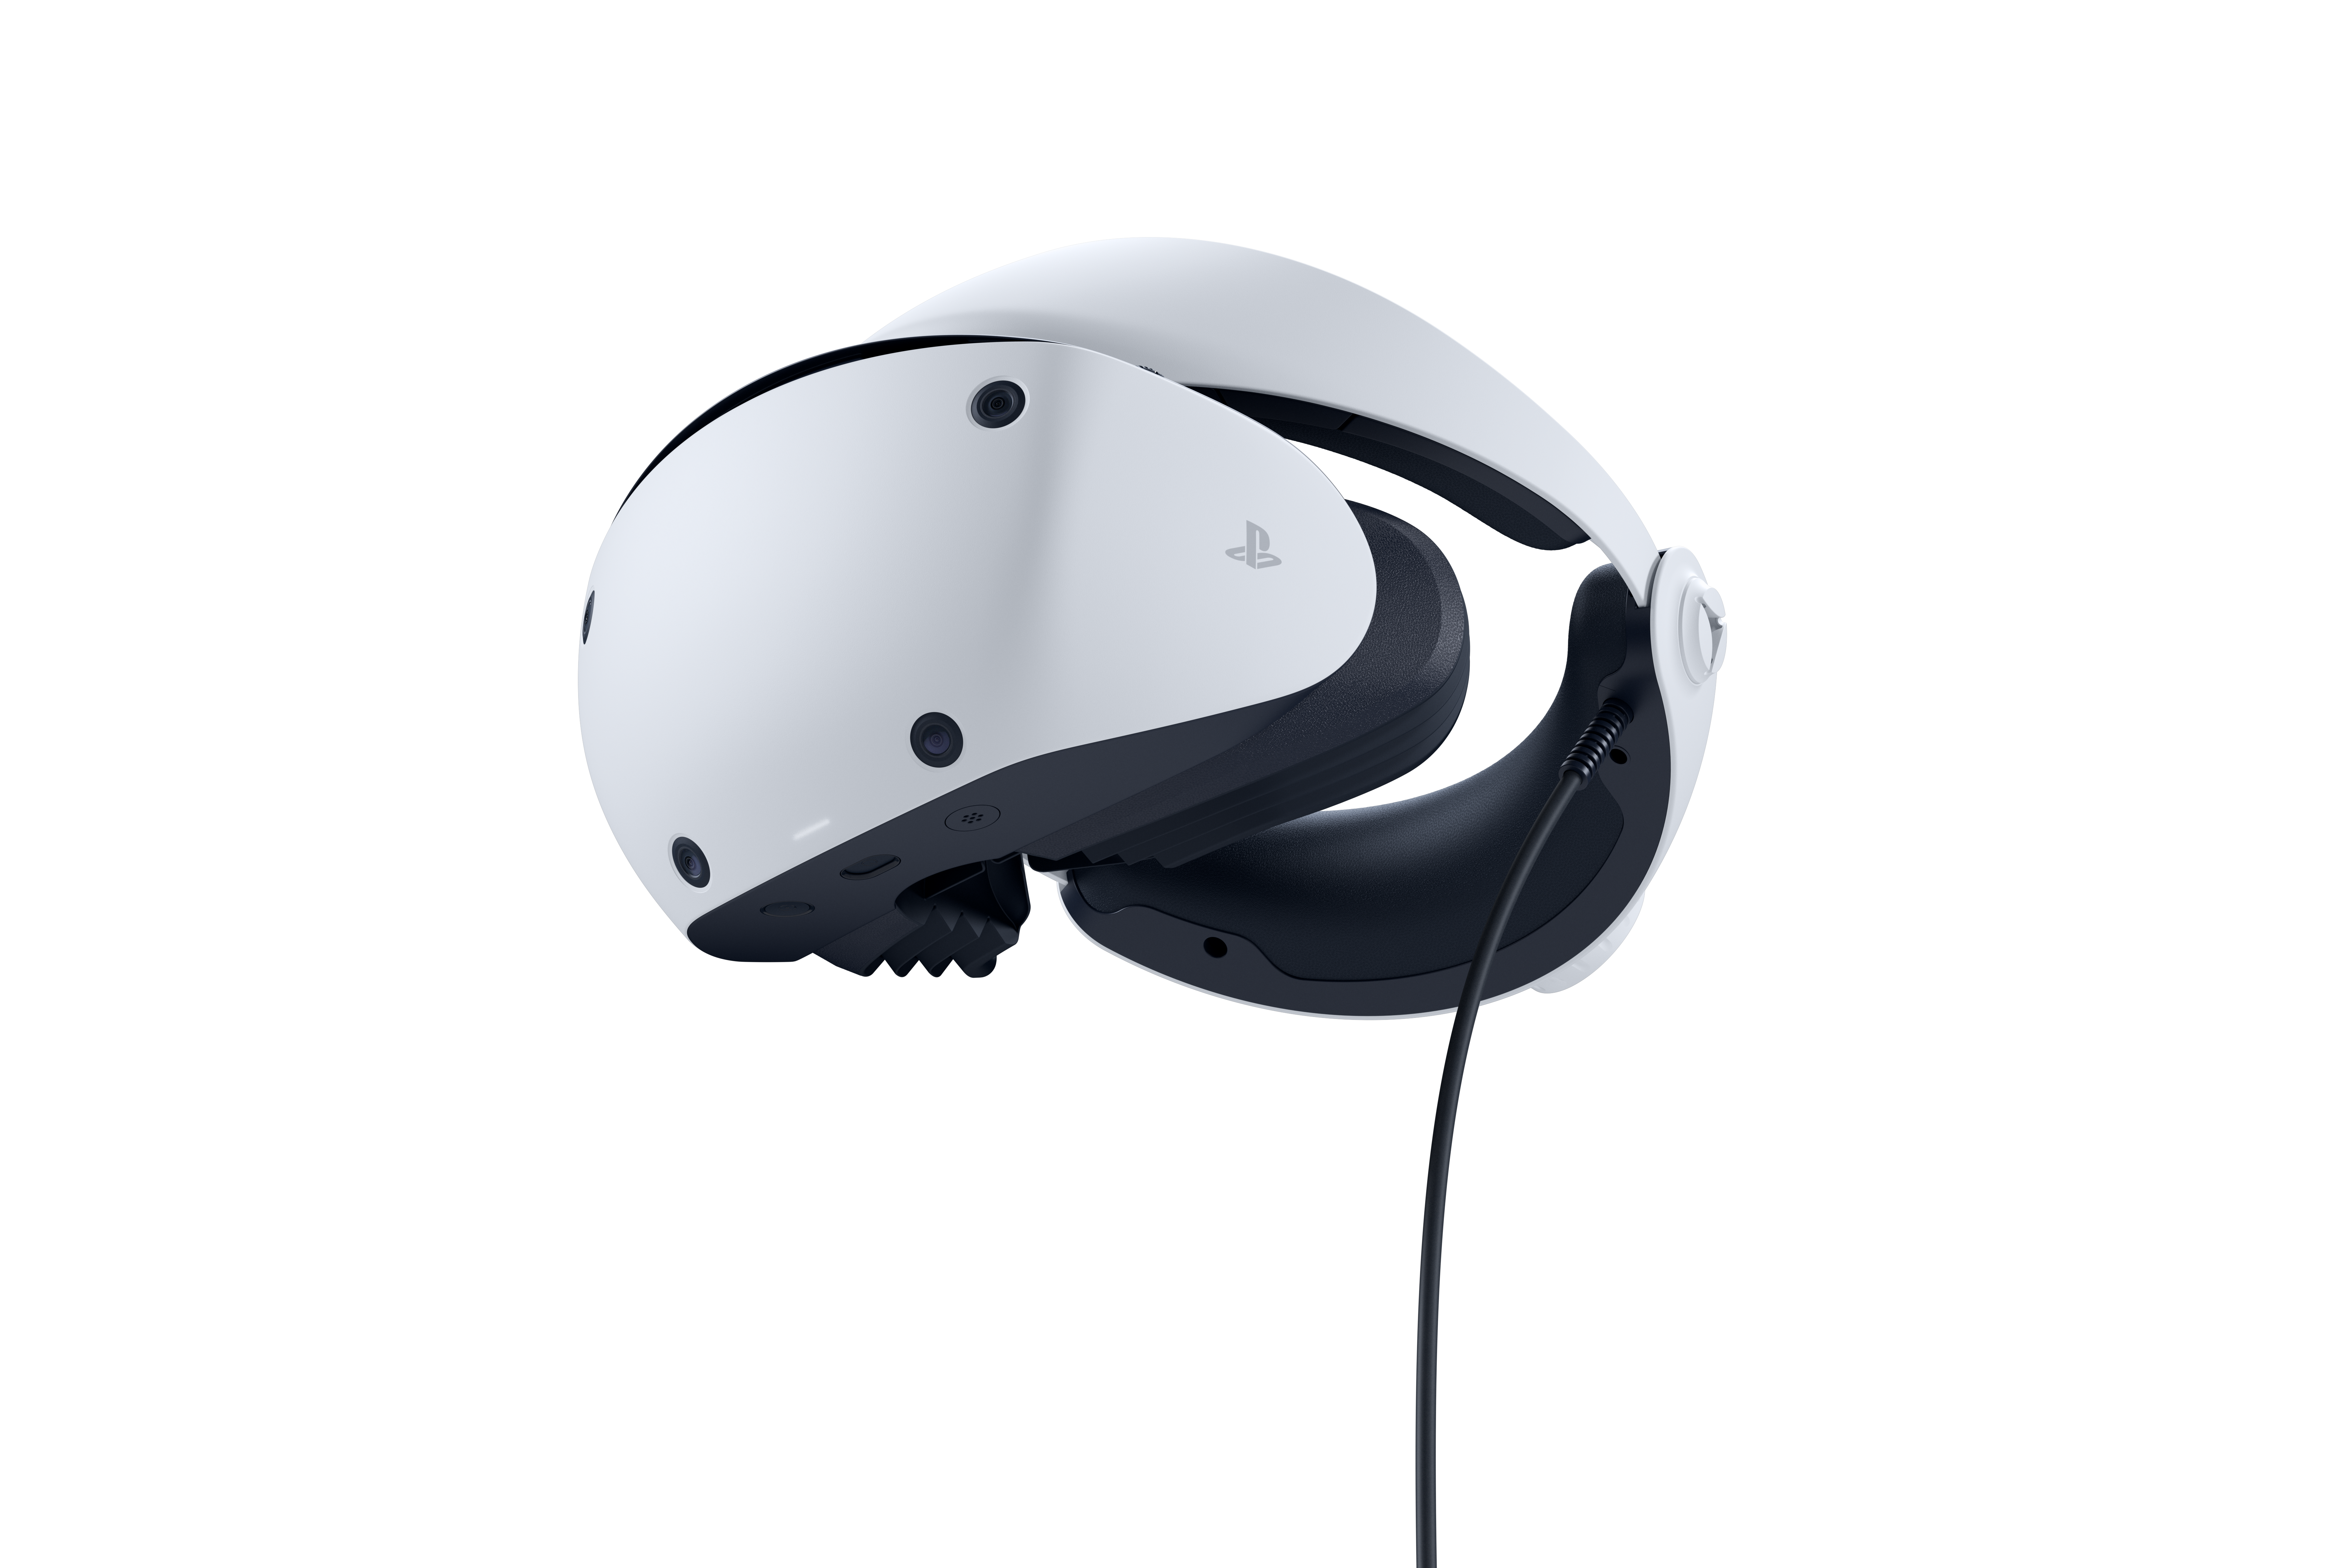 Sony PlayStation VR2 - PSVR2